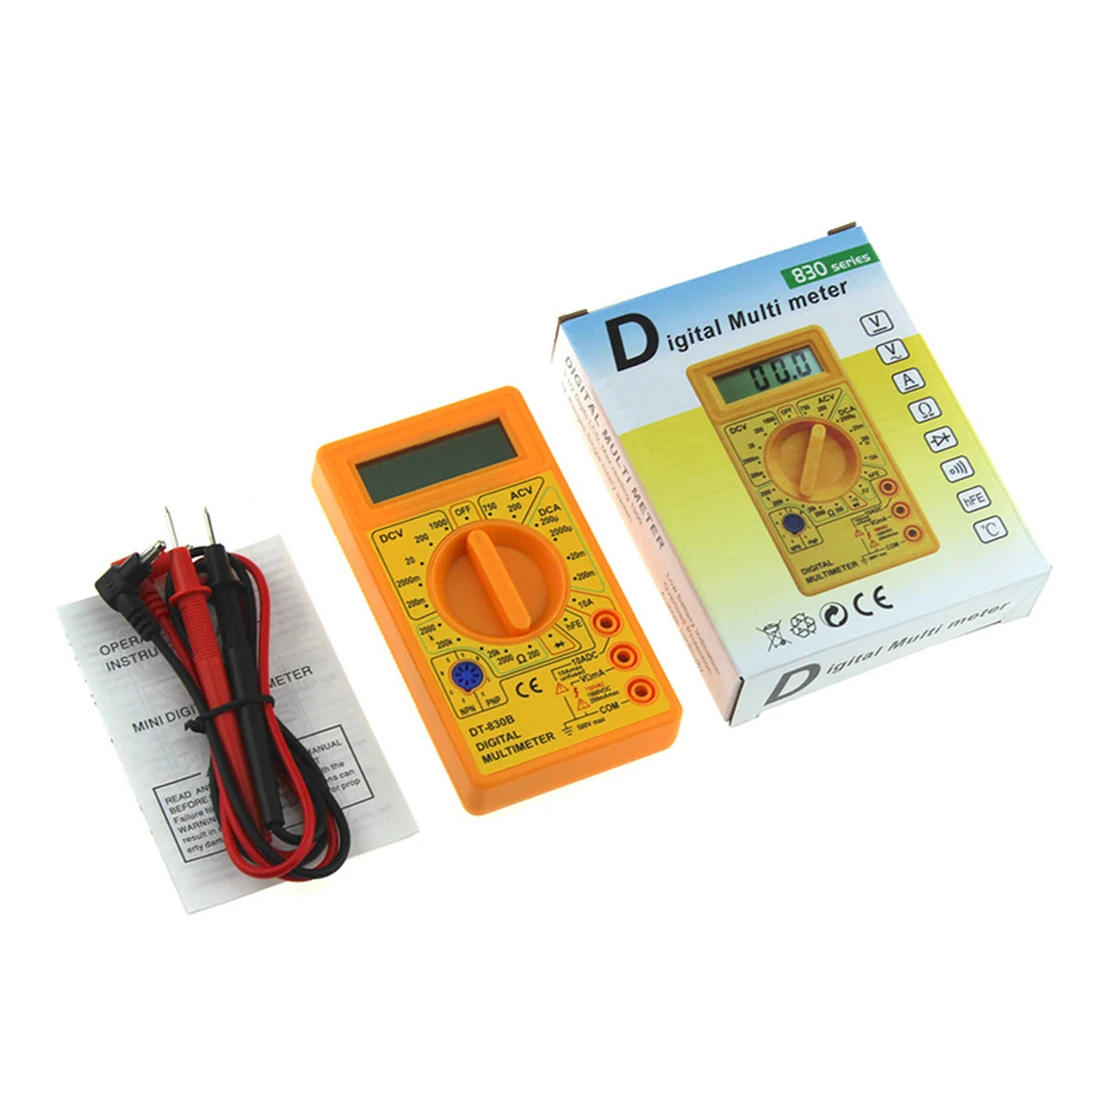 MT87 ЖК-цифровой мультиметр портативный ручной AC/DC тестер тока Омметр измерители тестер инструменты Карманный измеритель напряжения многотестер - Цвет: DT830B